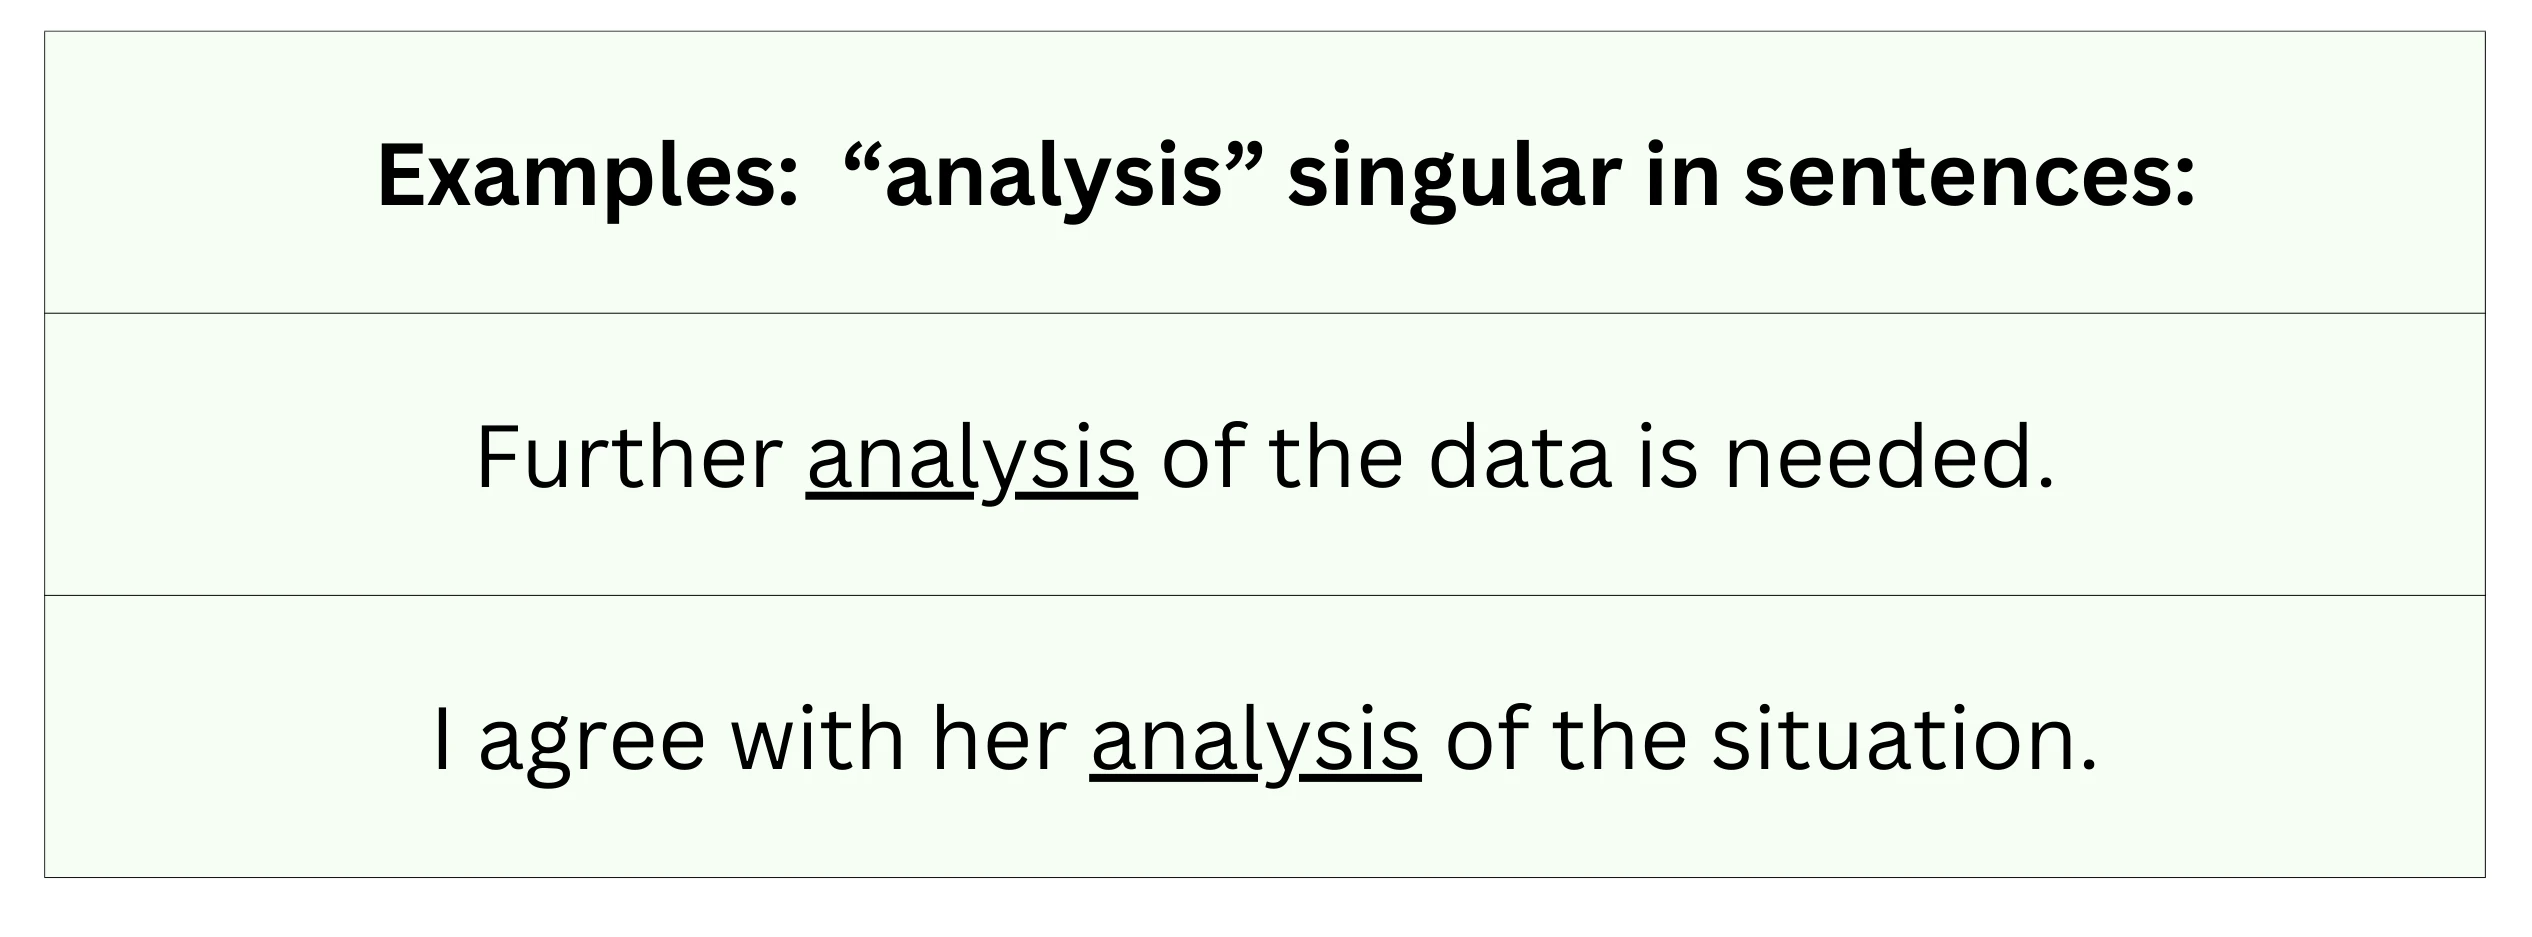 "Analysis" singular in sentence examples.